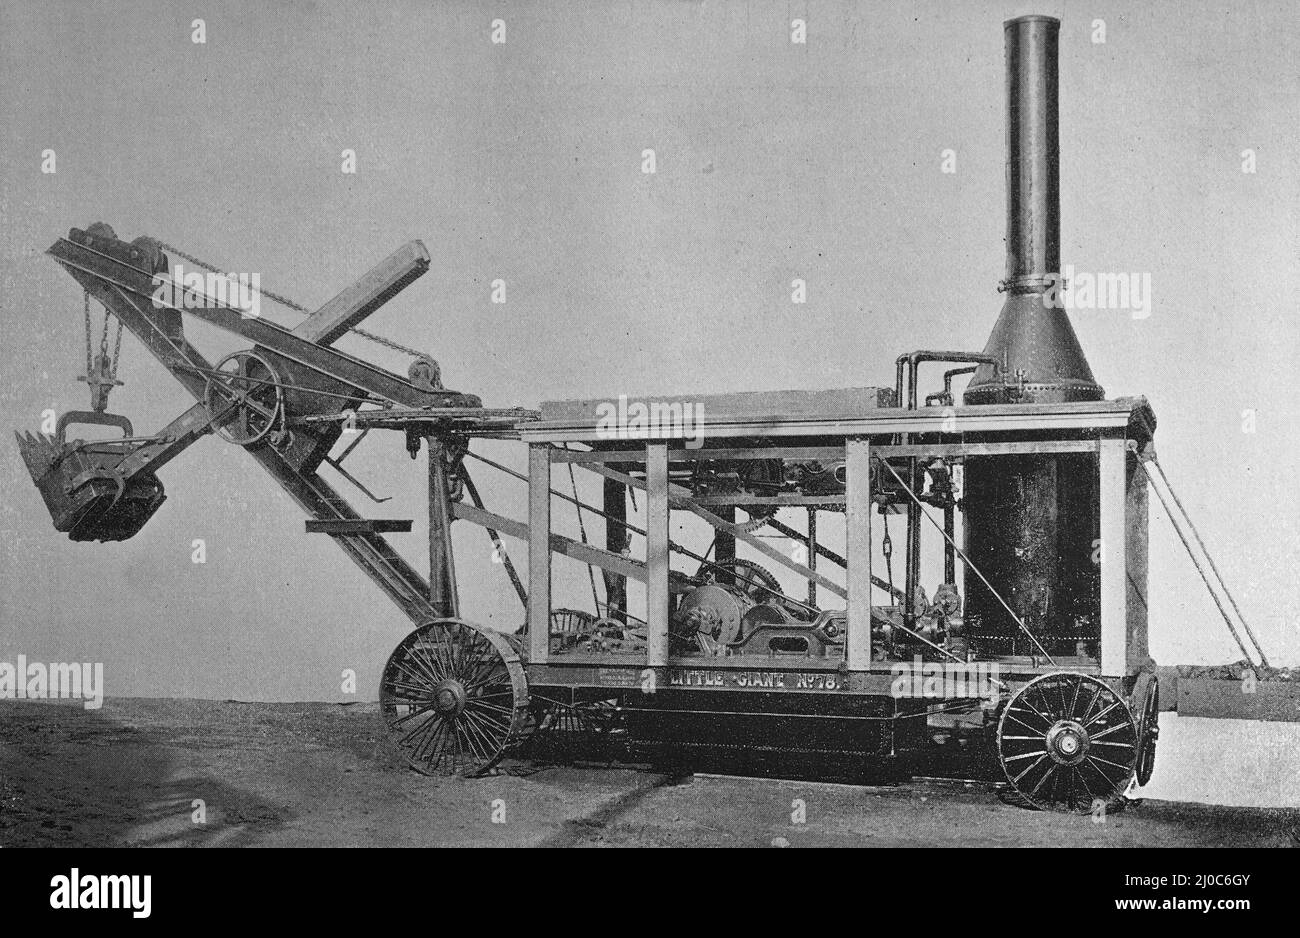 Una pala de vapor con ruedas de tracción, construida por la Vulcan Iron Works Company, Toledo. Fotografía en blanco y negro Foto de stock